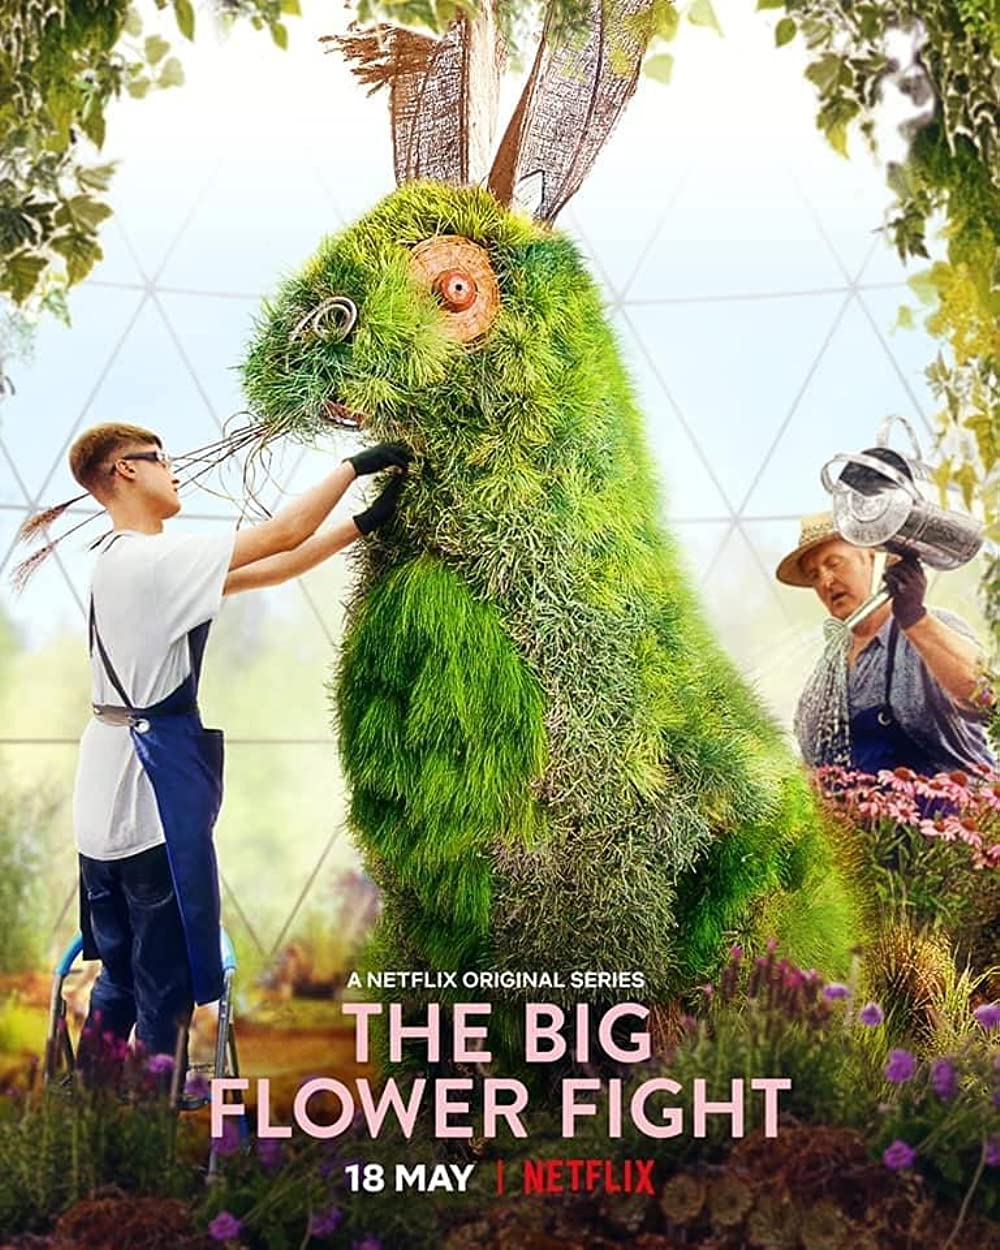 Filmbeschreibung zu Der große Blumenkampf